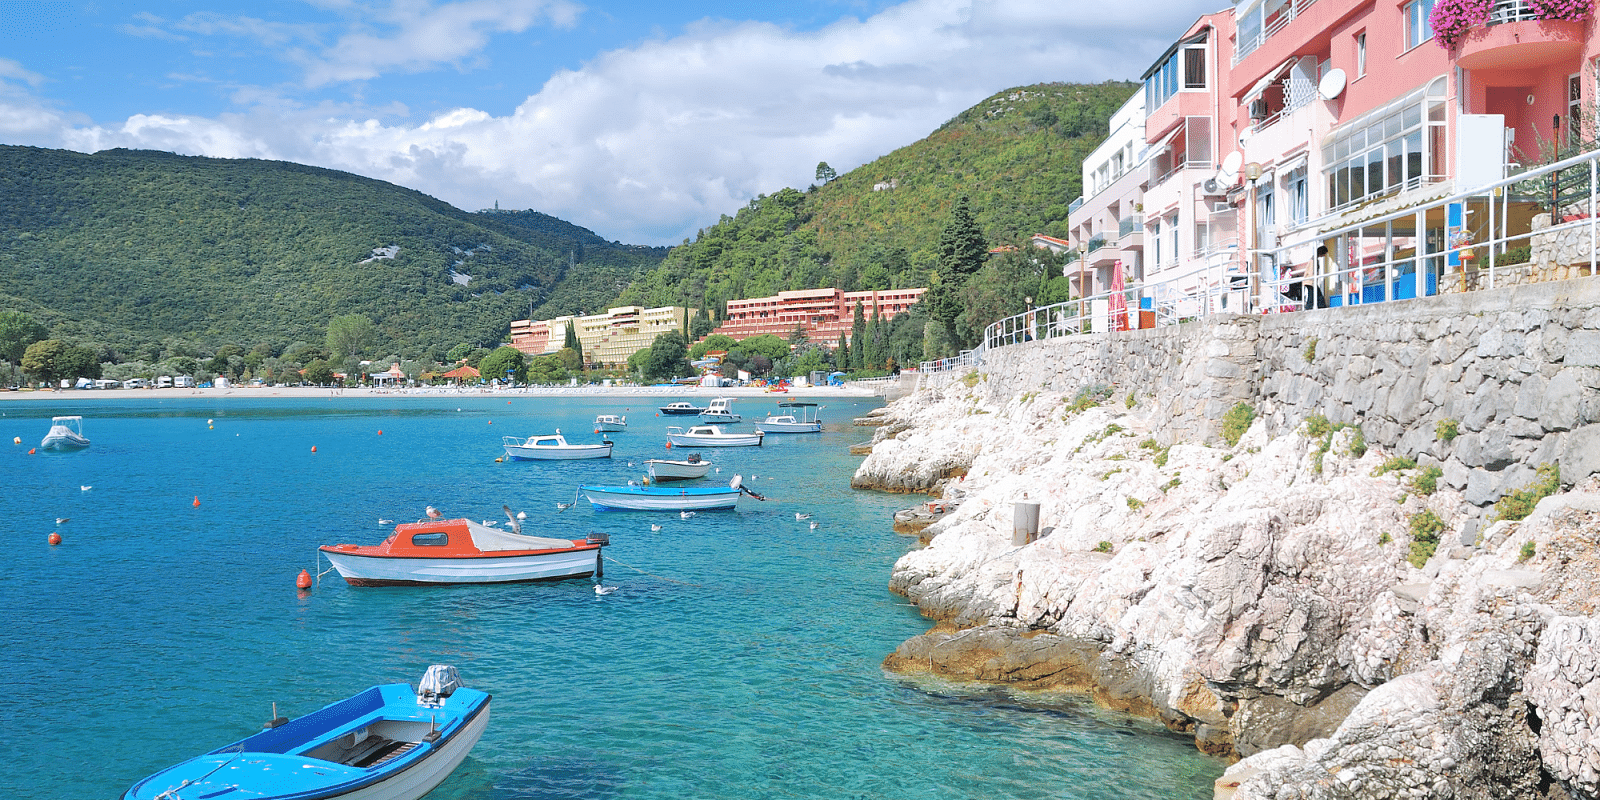 Lej en båd i Italienske Adriaterhav